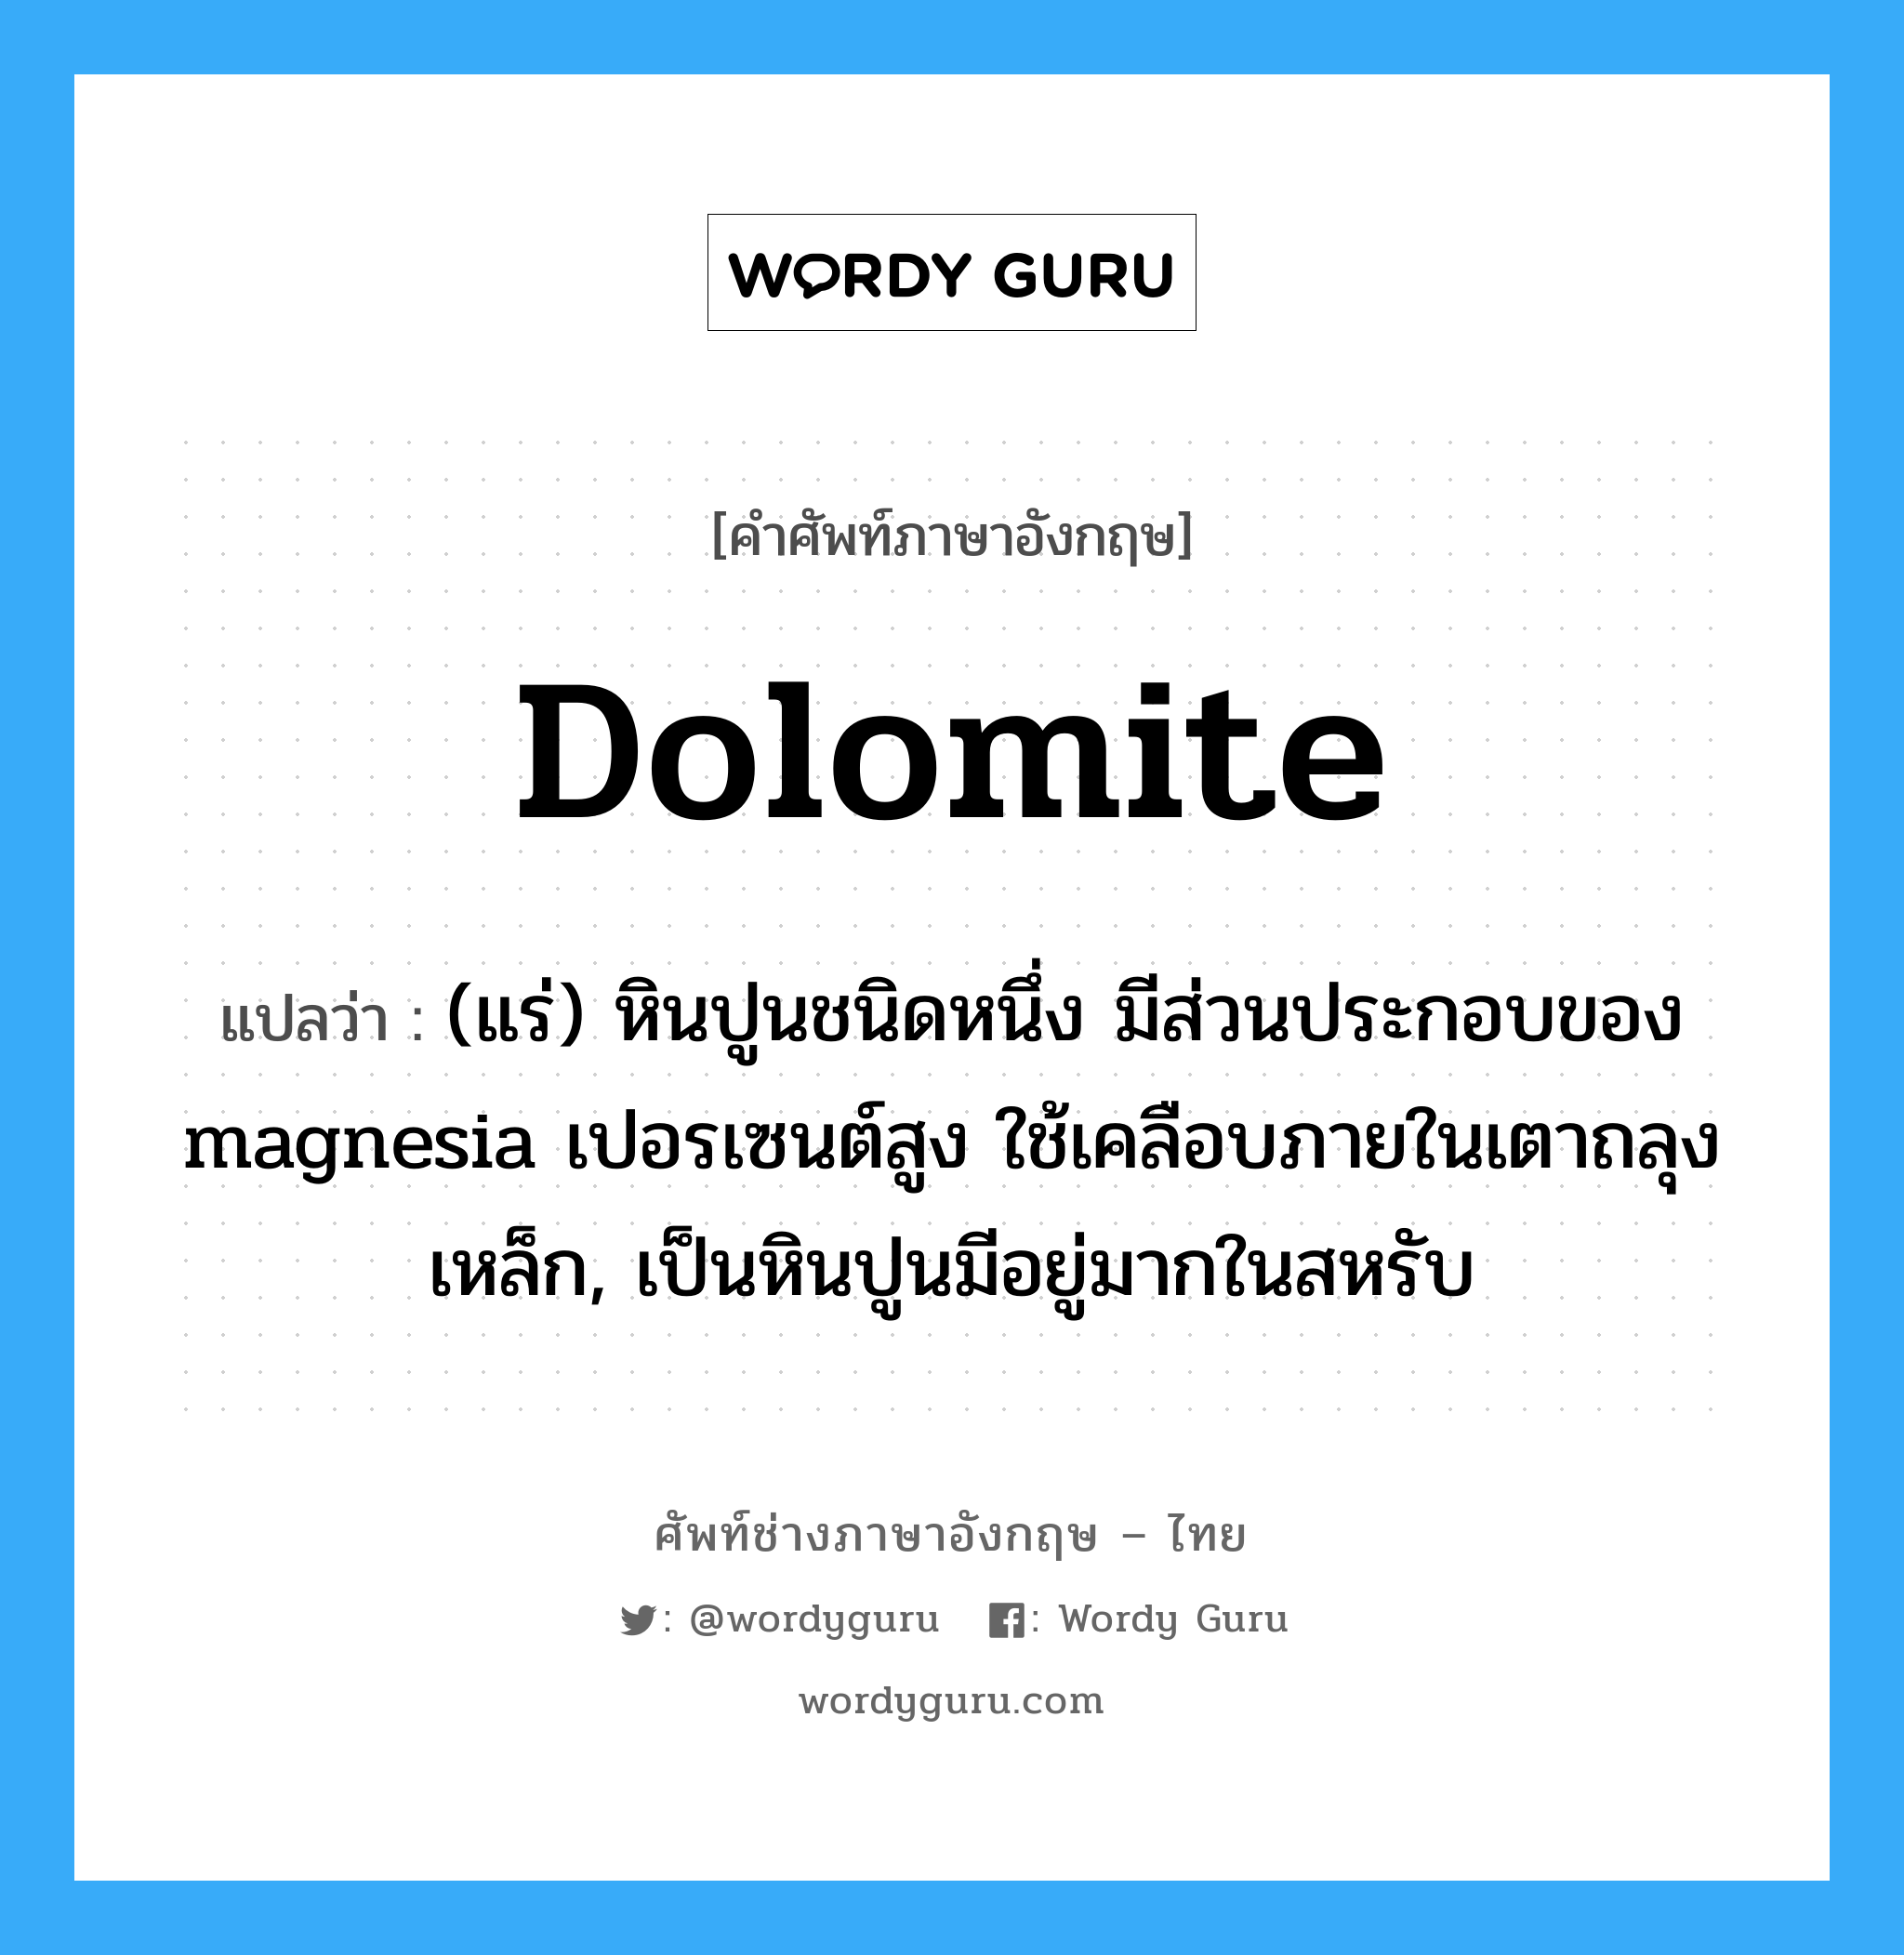 dolomite แปลว่า?, คำศัพท์ช่างภาษาอังกฤษ - ไทย dolomite คำศัพท์ภาษาอังกฤษ dolomite แปลว่า (แร่) หินปูนชนิดหนึ่ง มีส่วนประกอบของ magnesia เปอรเซนต์สูง ใช้เคลือบภายในเตาถลุงเหล็ก, เป็นหินปูนมีอยู่มากในสหรับ